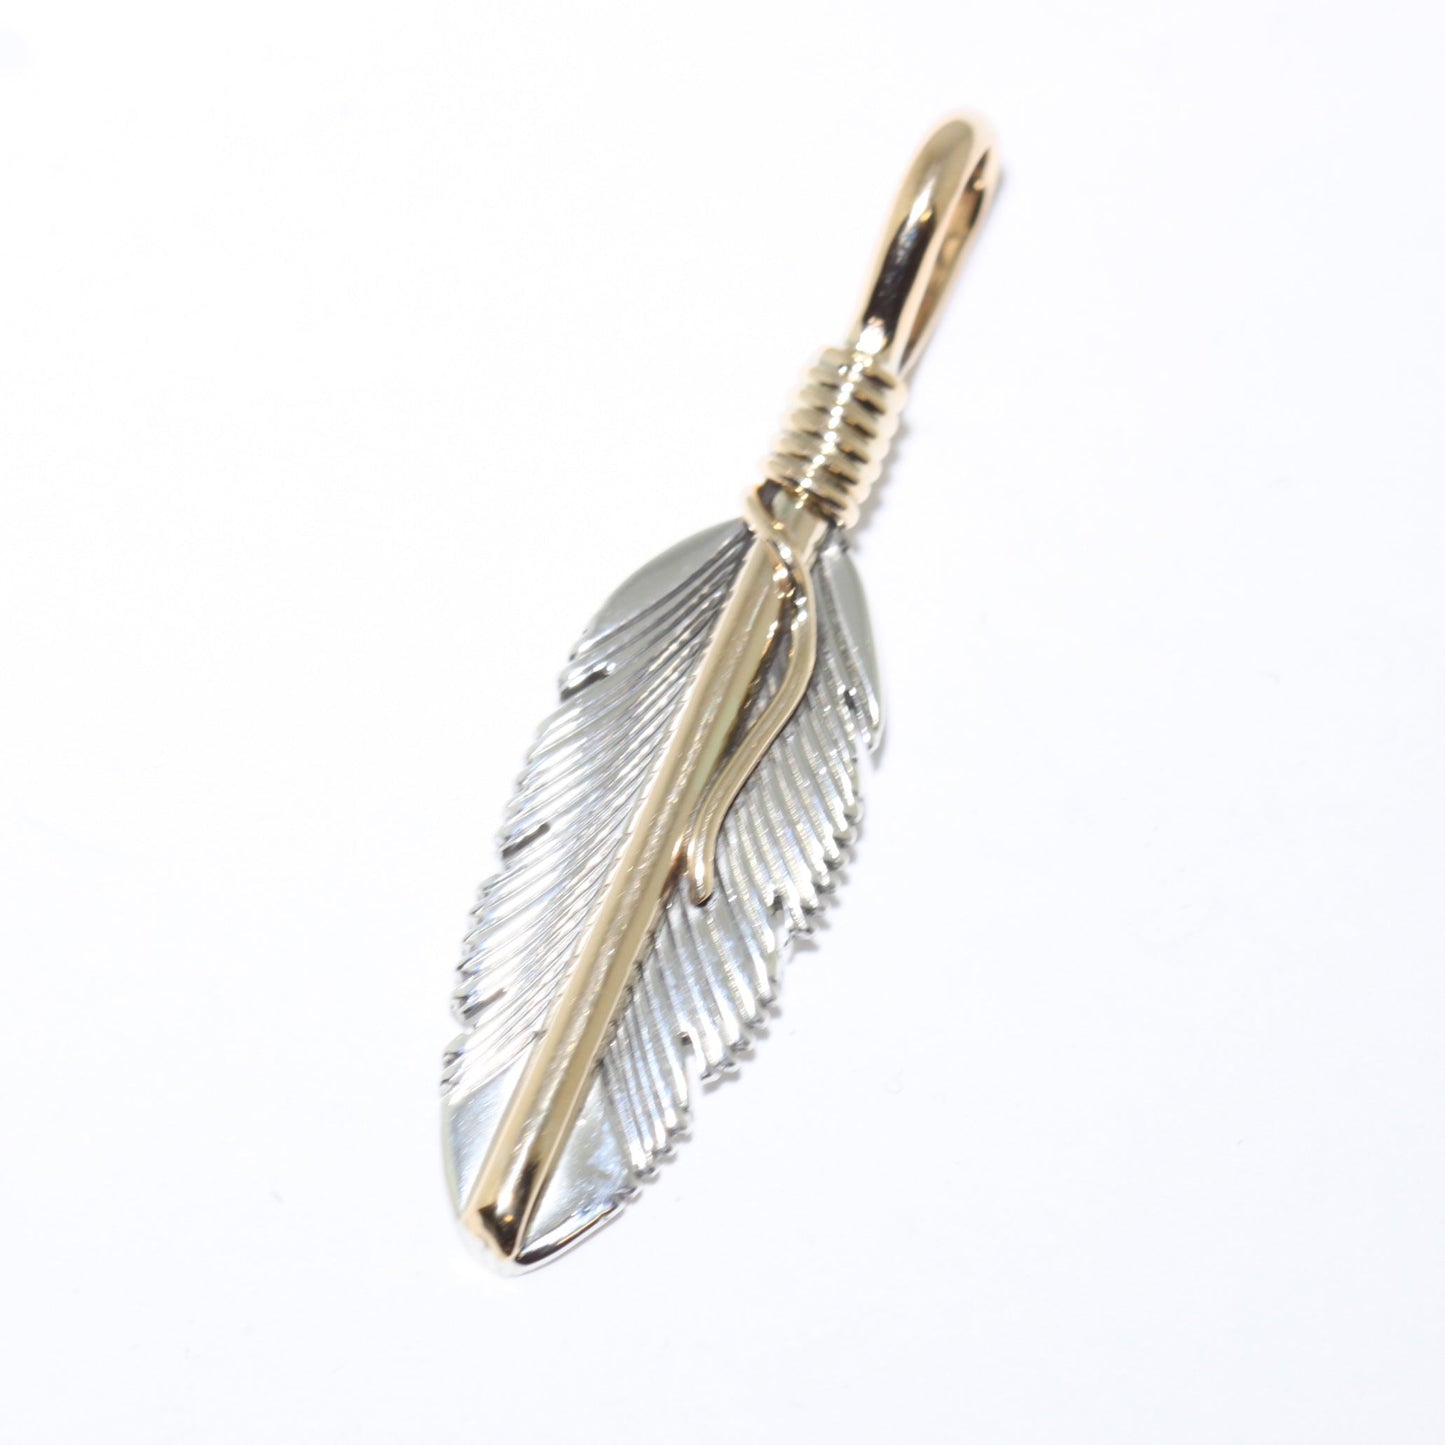 हार्वे मेस का पंख वाला पेंडेंट (चांदी या सोना)